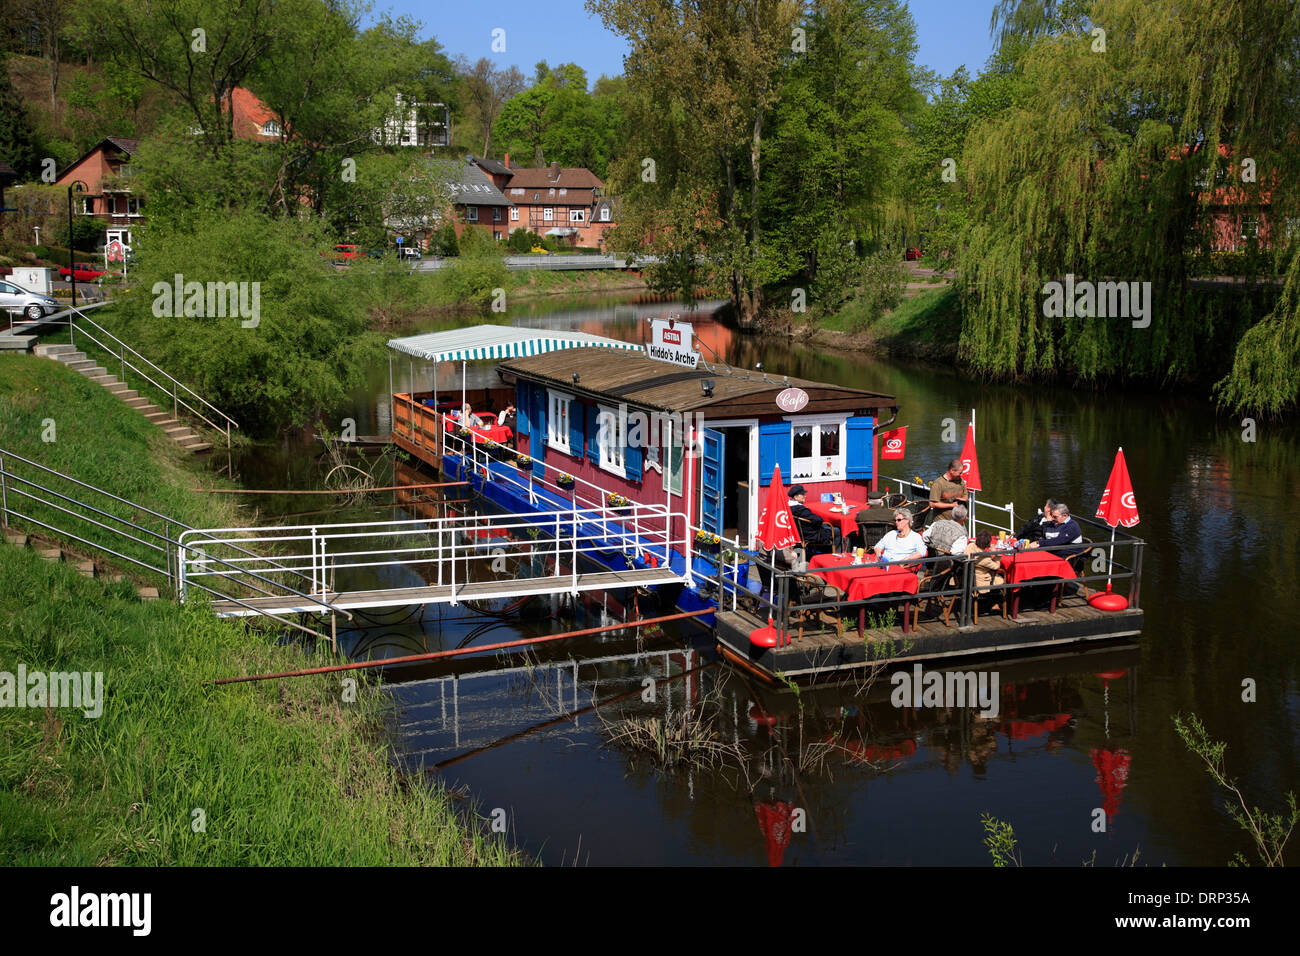 Restaurant Hiddos schwimmen cycle Arche am Fluss Sperrwerks, Hitzacker, Elbe Route, Niedersachsen, Deutschland, Europa Stockfoto